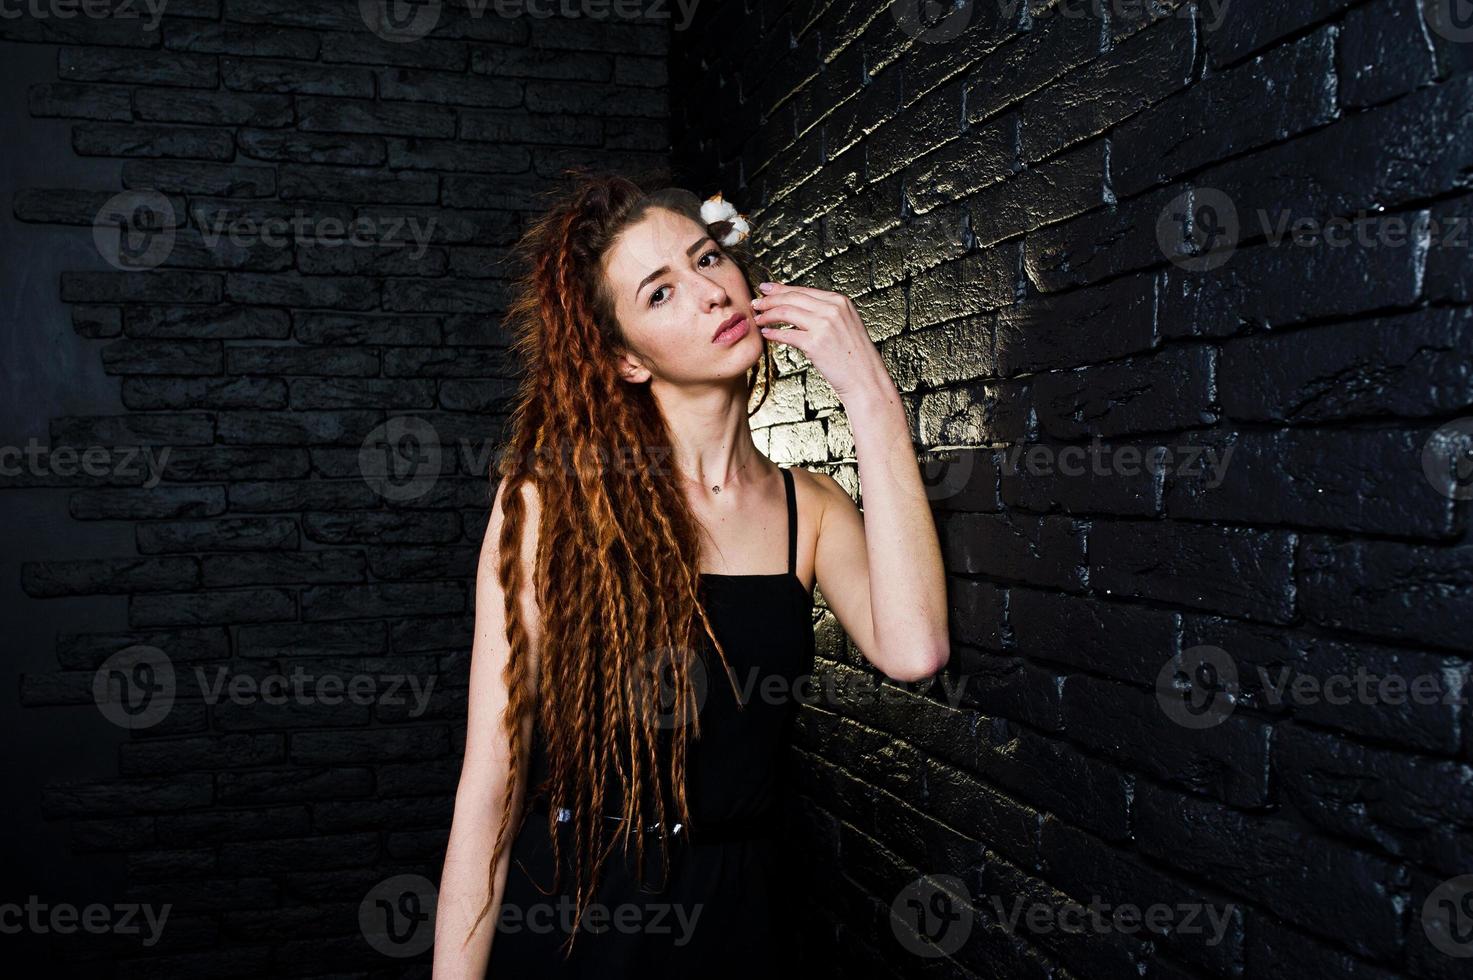 tournage en studio d'une fille en noir avec des dreads sur fond de brique. photo